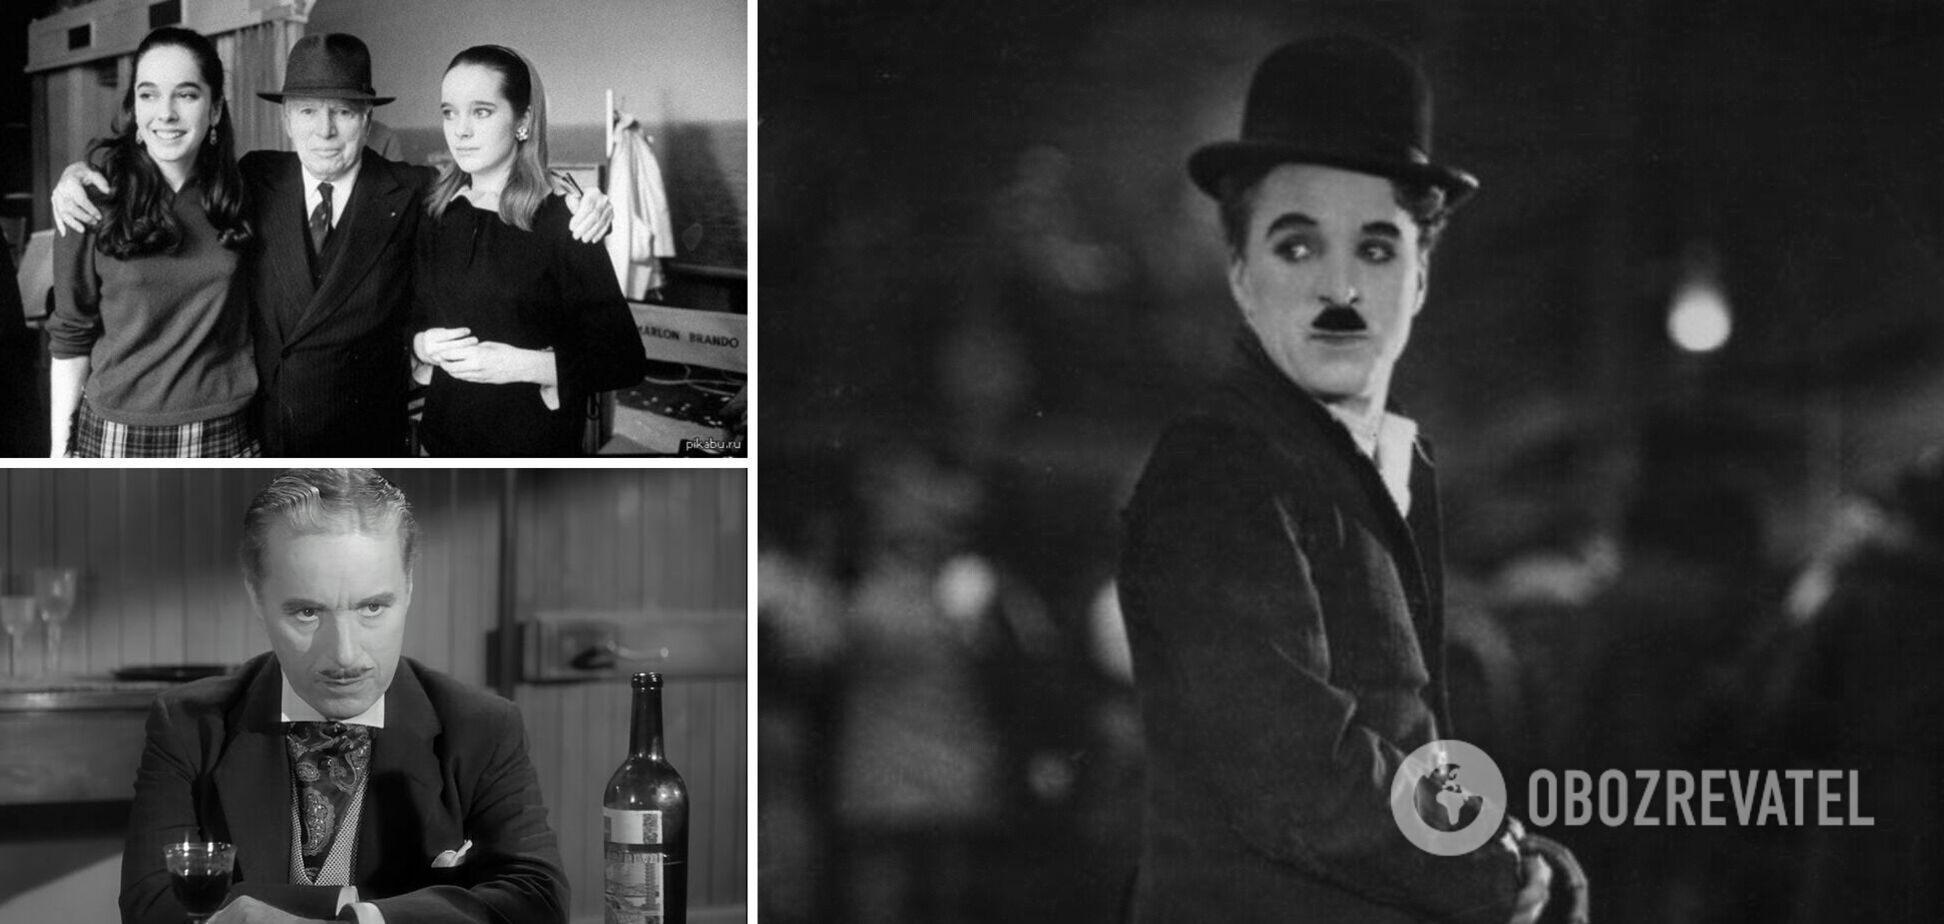 Чарлі Чаплін був легендарним актором, продюсером та режисером